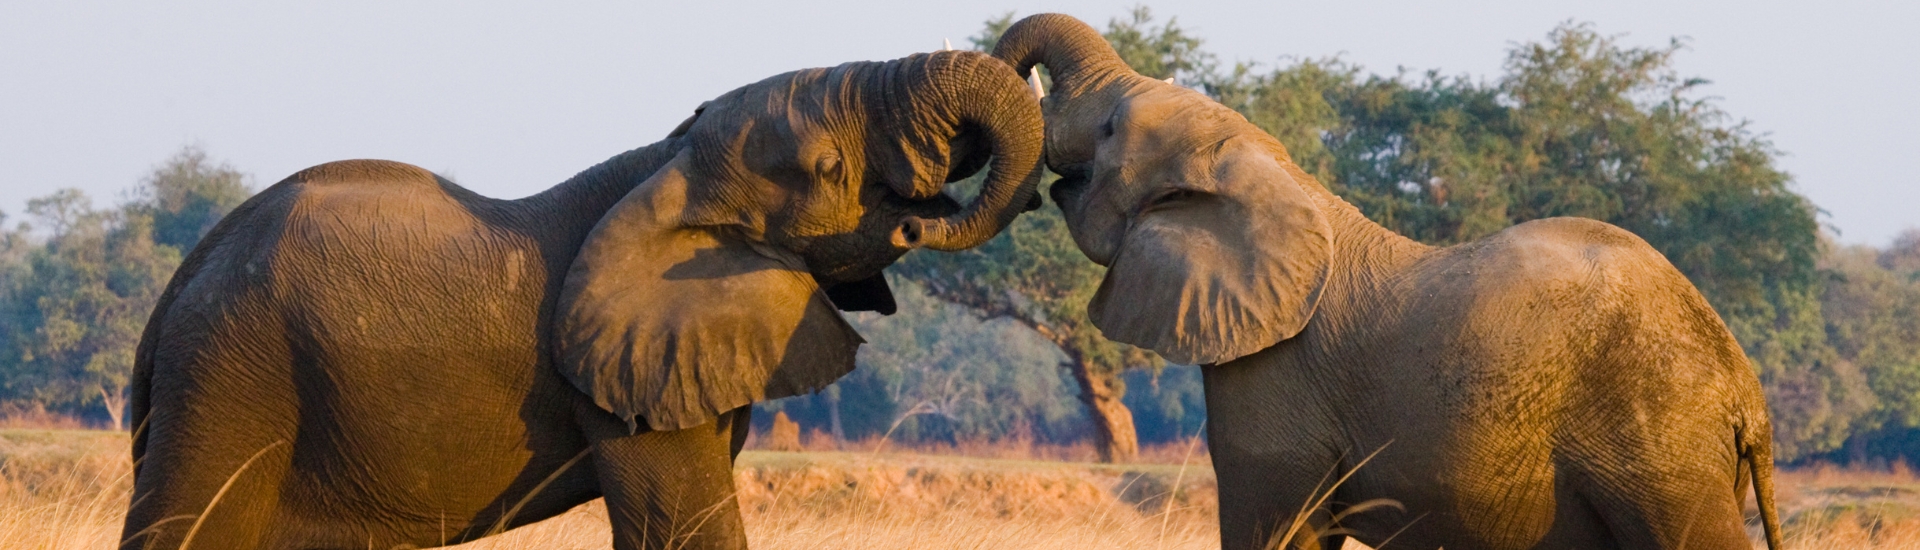 Elephants playing at Zambezi National Park, Zambia